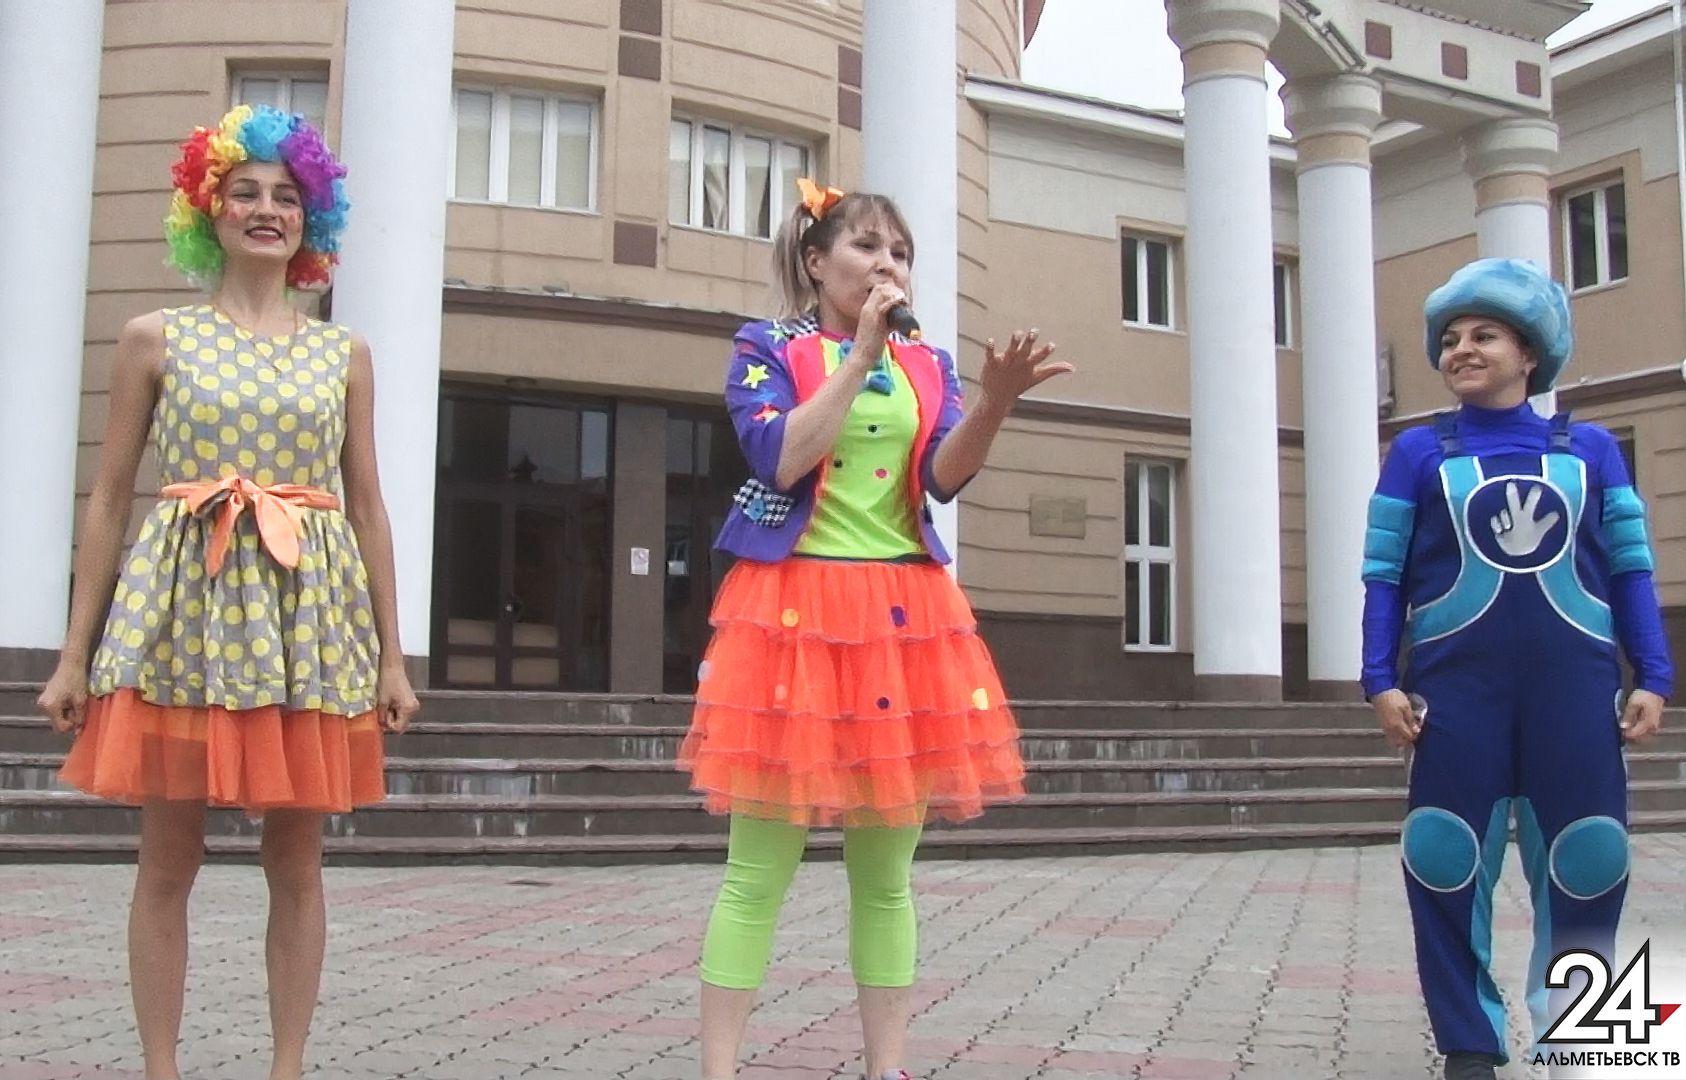 Арбузная вечеринка, дискотека, концерты: немало сюрпризов приготовила «Культурная среда города» в Альметьевске